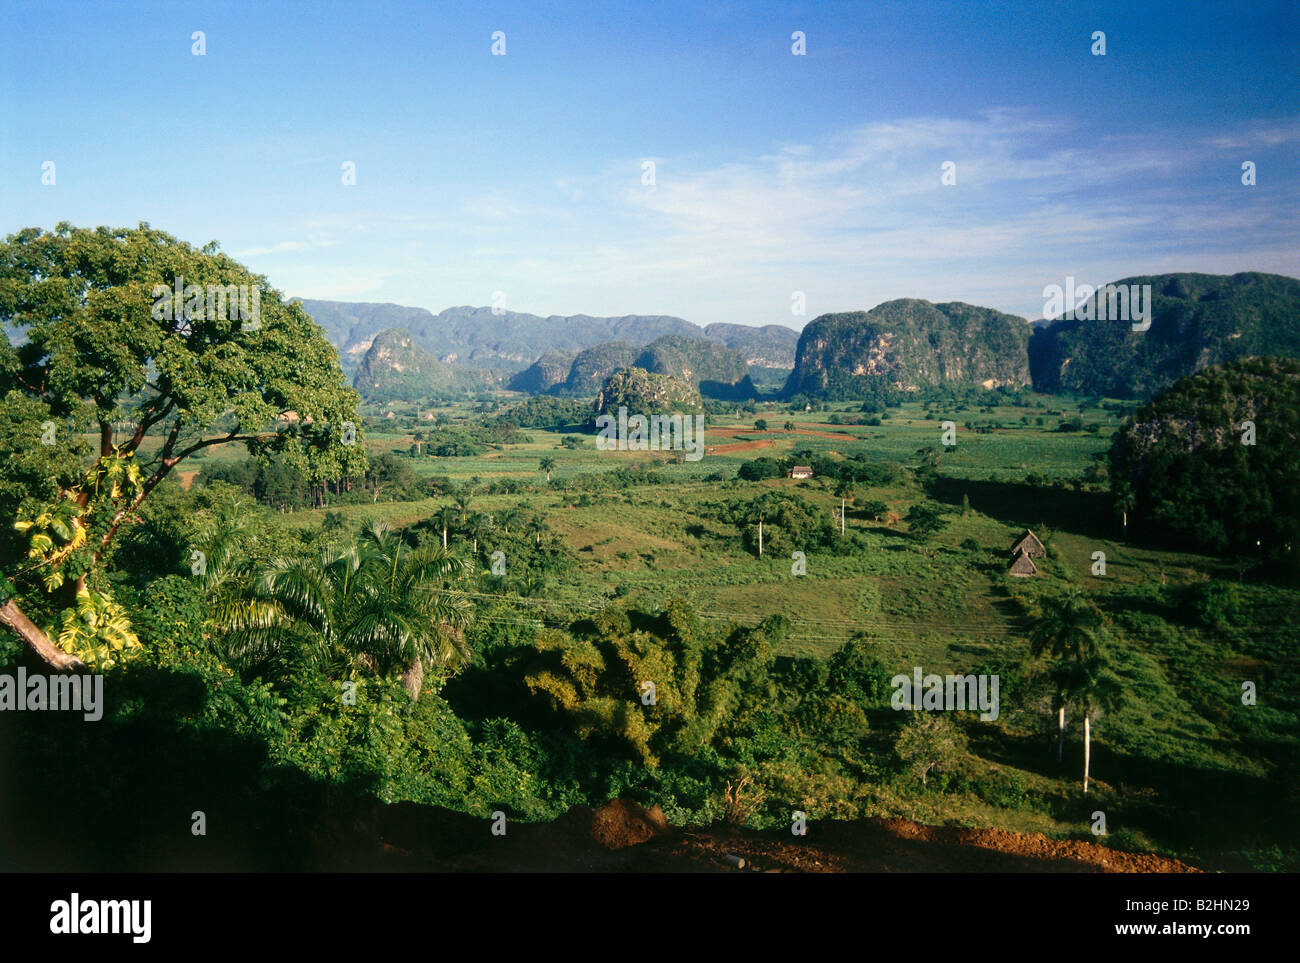 Geographie / Reisen, Kuba, Vinales, tropische Landschaft, Zentral-Amerika, Landschaften, Tropen, UNESCO, Weltnaturerbe Stockfoto